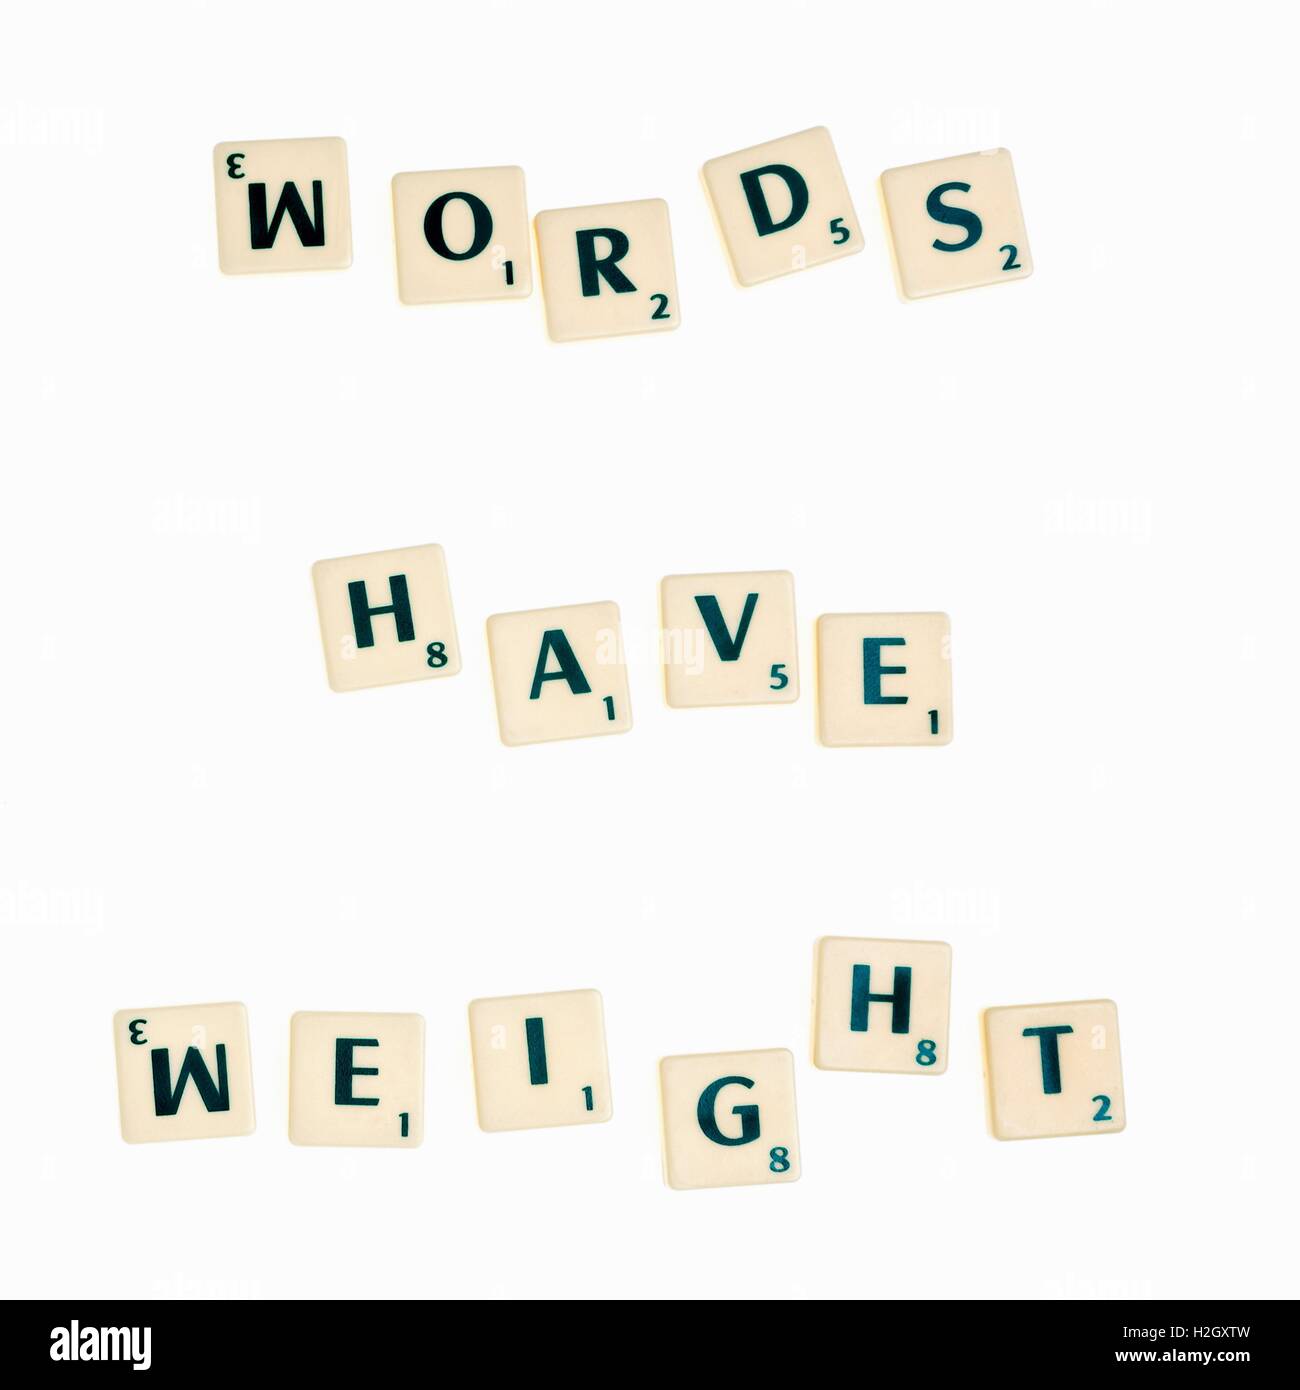 Le jeu de tuiles avec des lettres pour former des mots et des phrases Banque D'Images